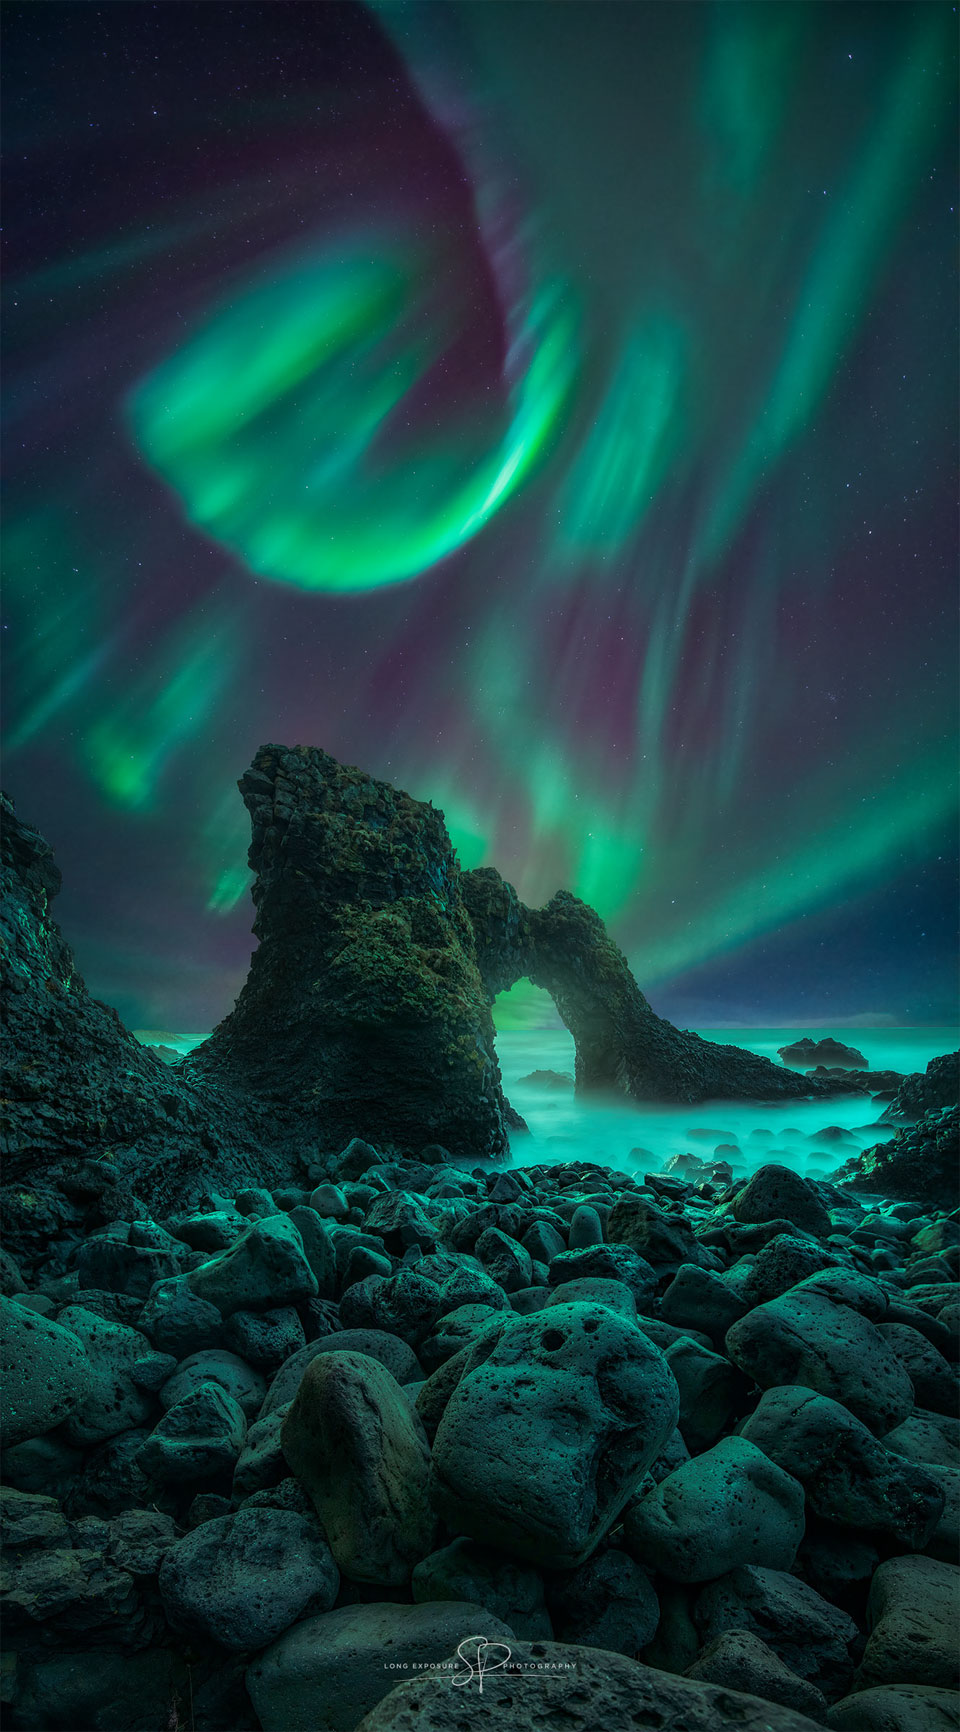 Über einer fantastischen Küste mit Steinen und einem Felsbogen wogt ein gewundenes lebhaftes Polarlicht.